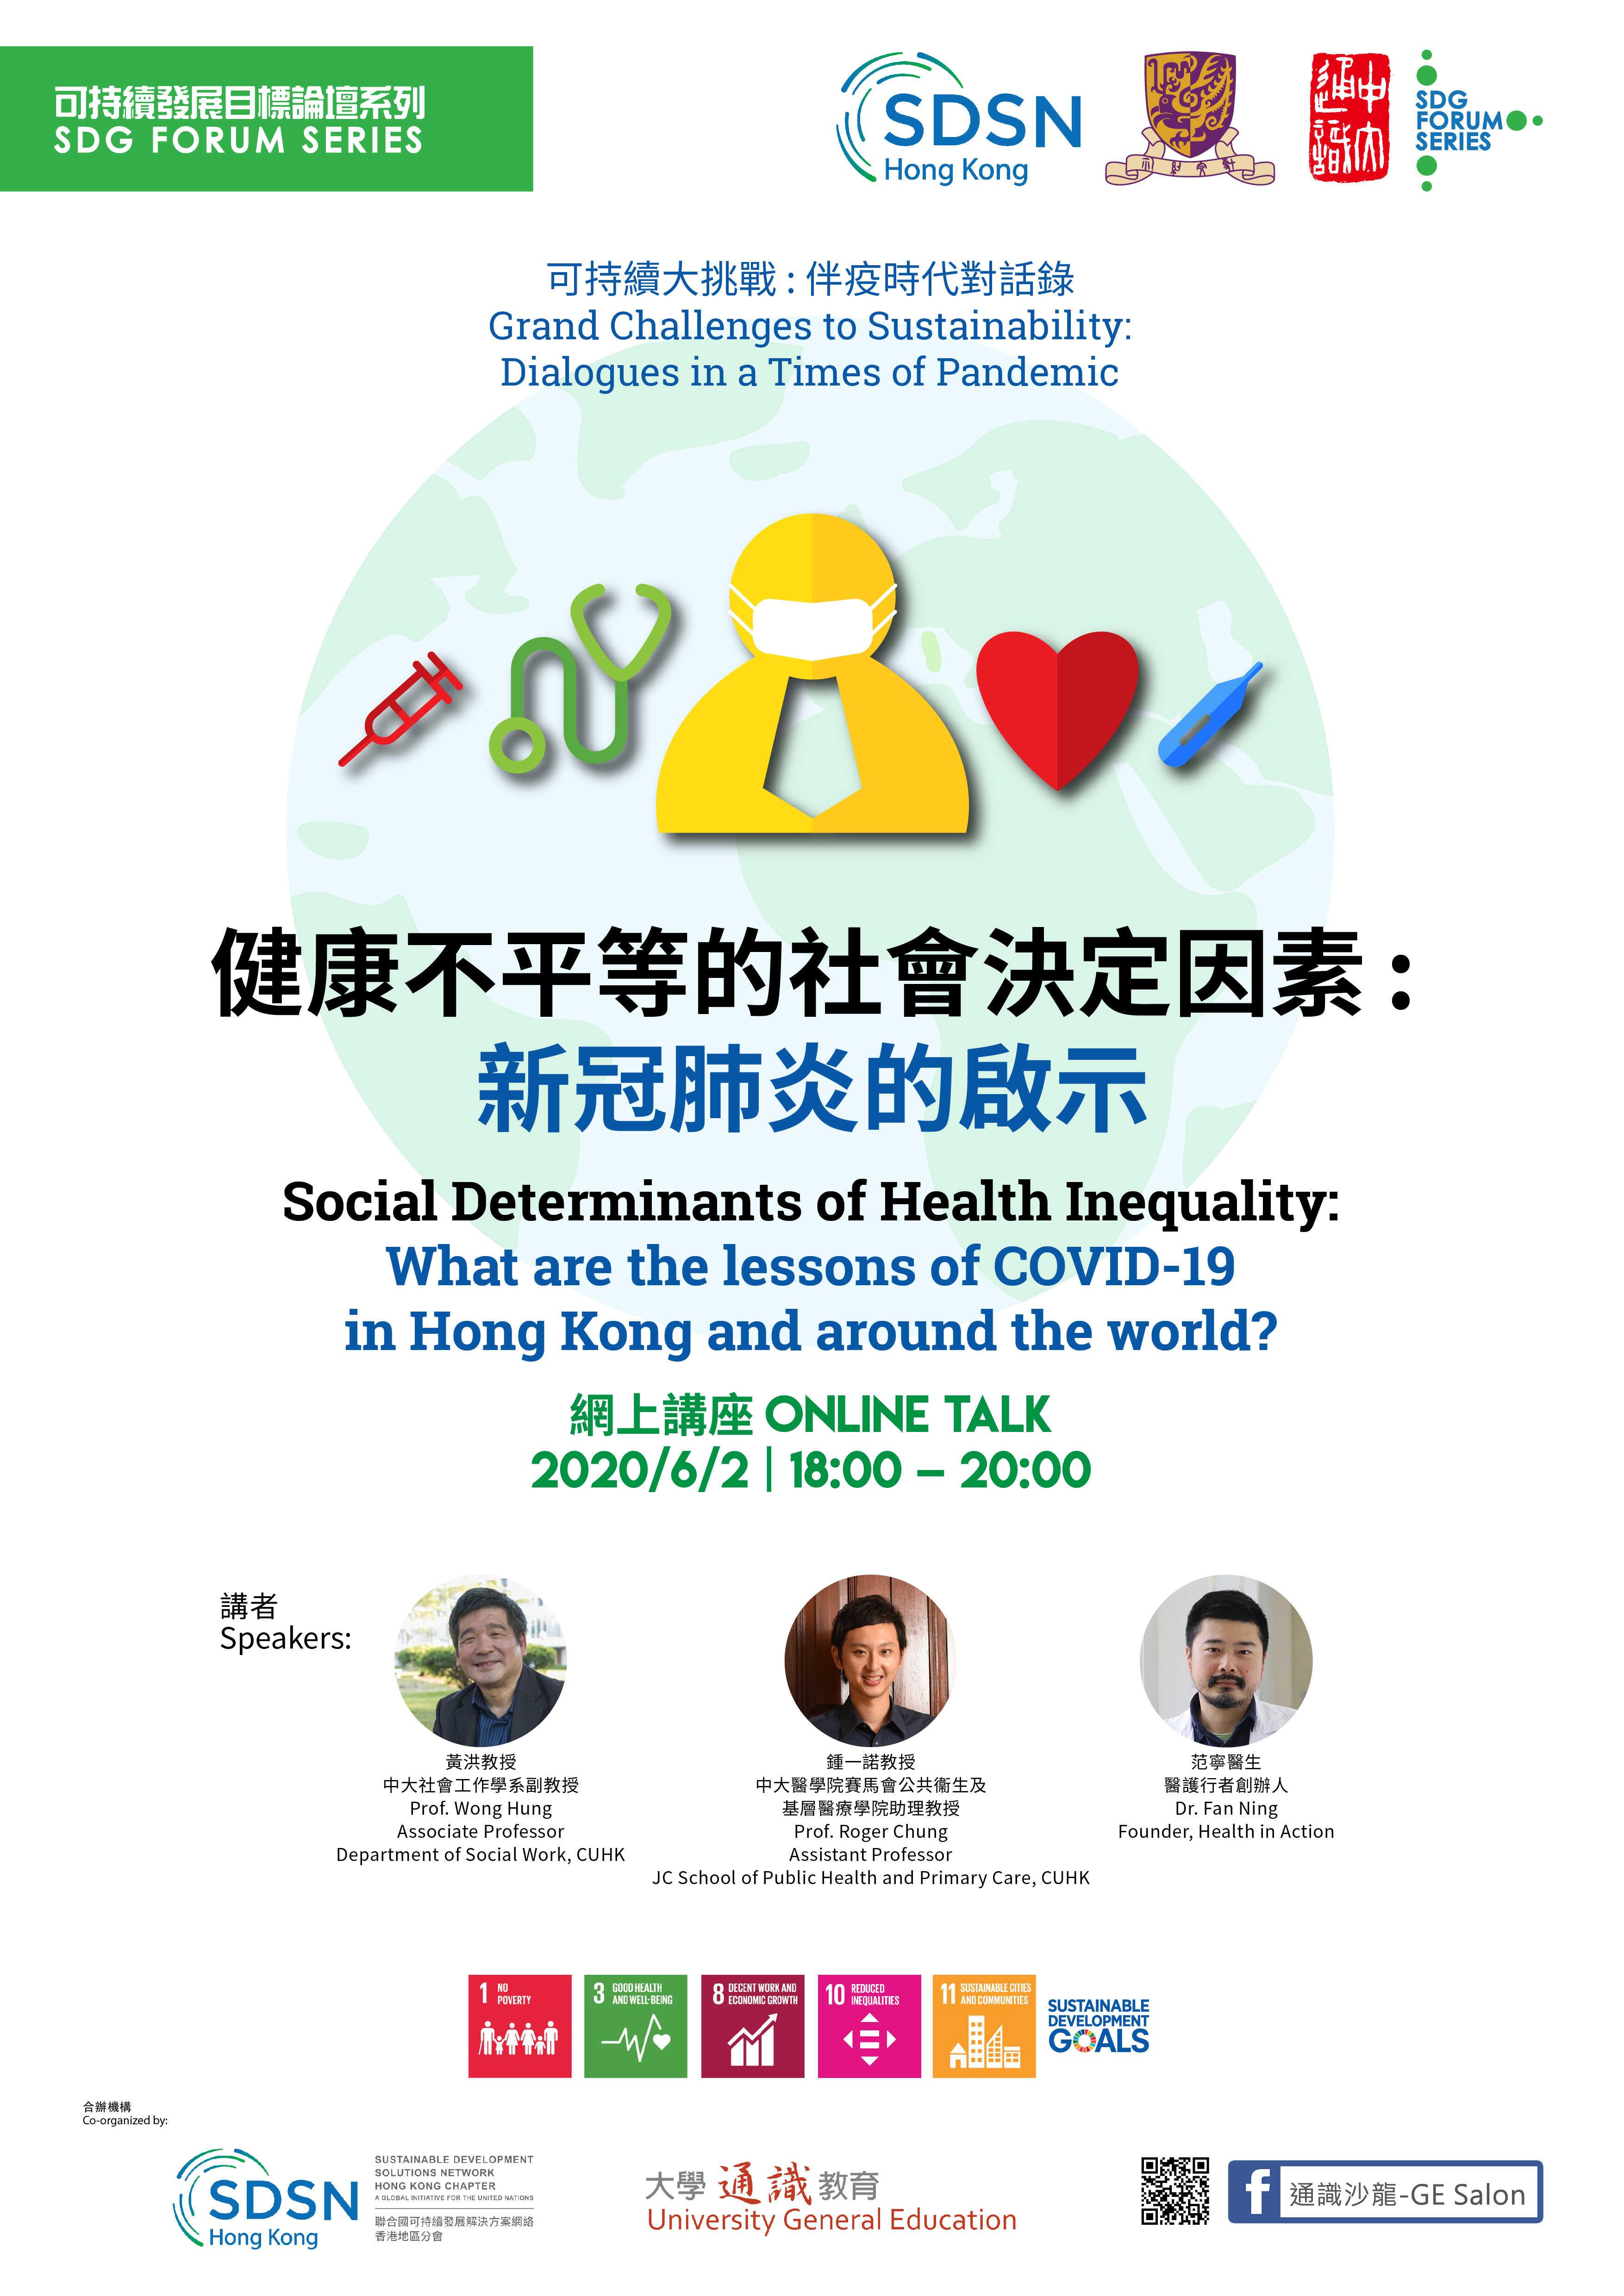 SDSNHK X GE SDG Forum 202006 session 1 Poster v3